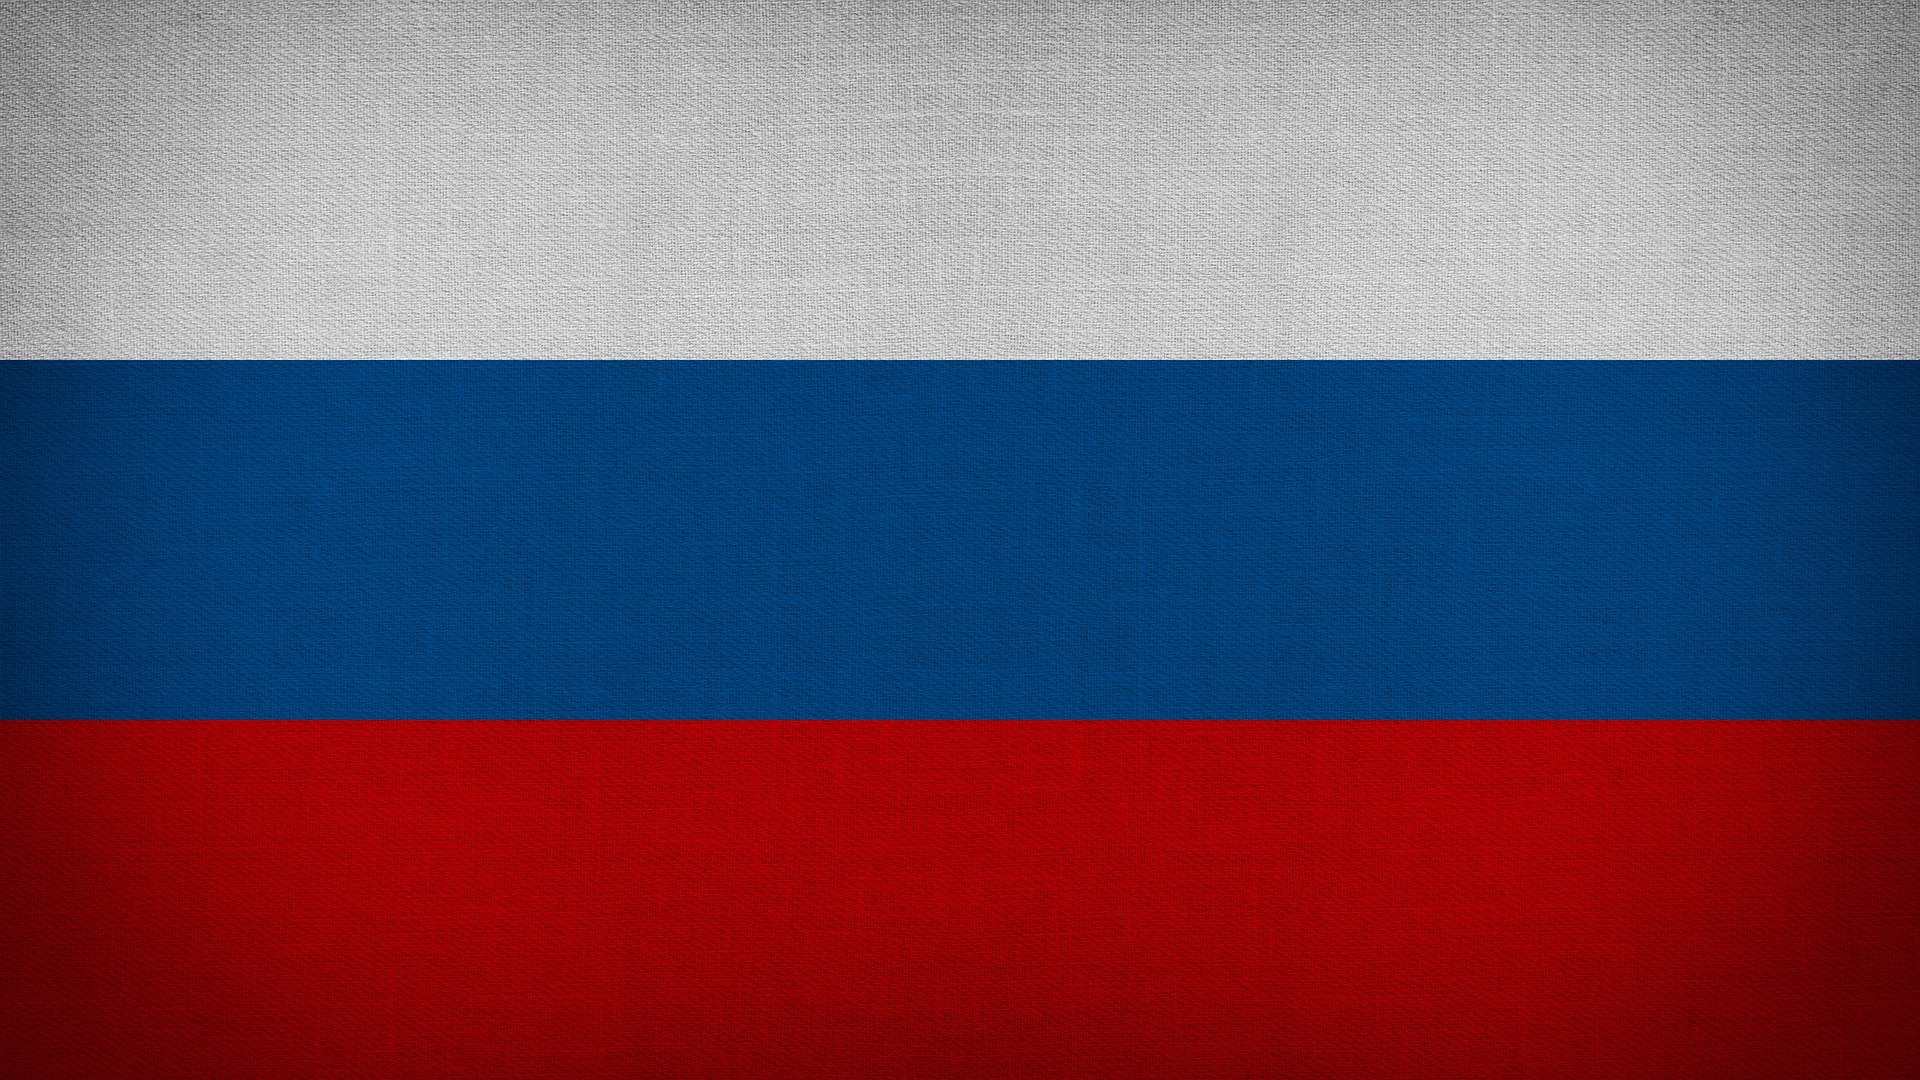 Русия вече е най-санкционираната държава в света.
От 22 февруари досега